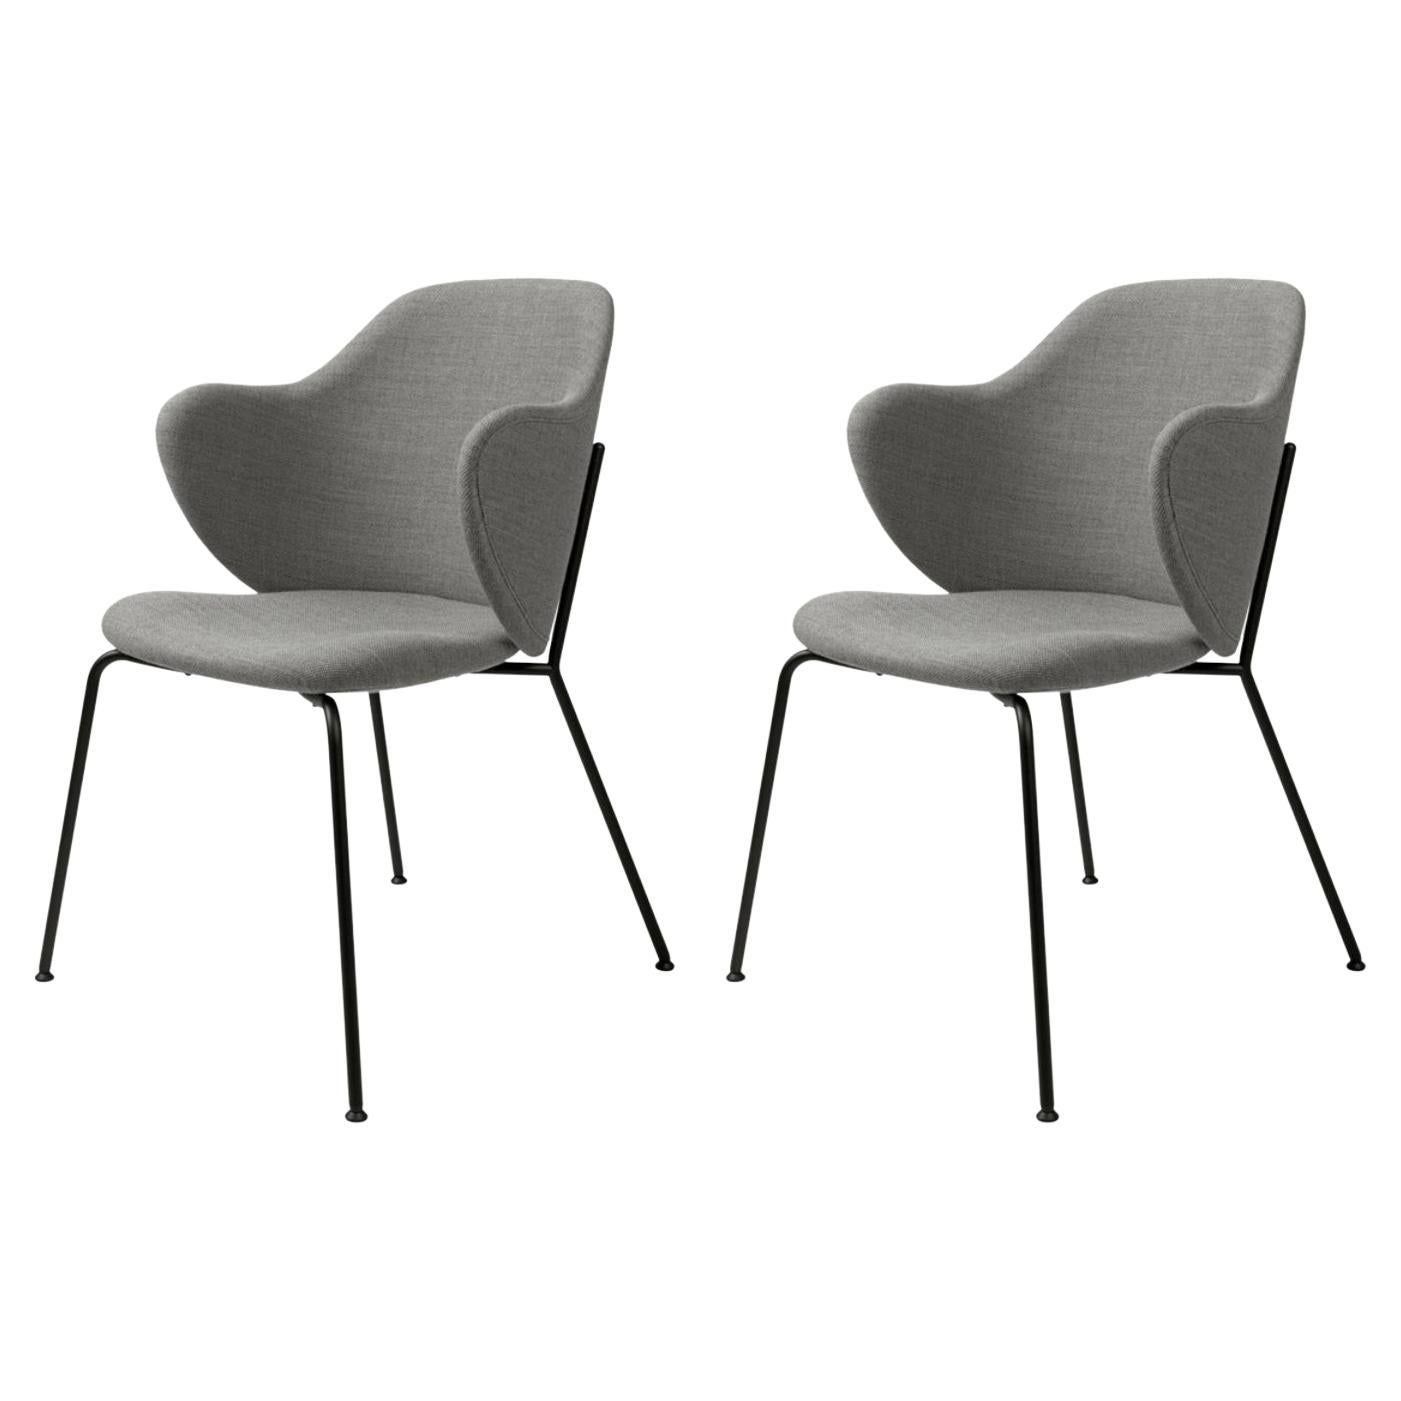 Set of 2 Grey Fiord Lassen Chairs by Lassen